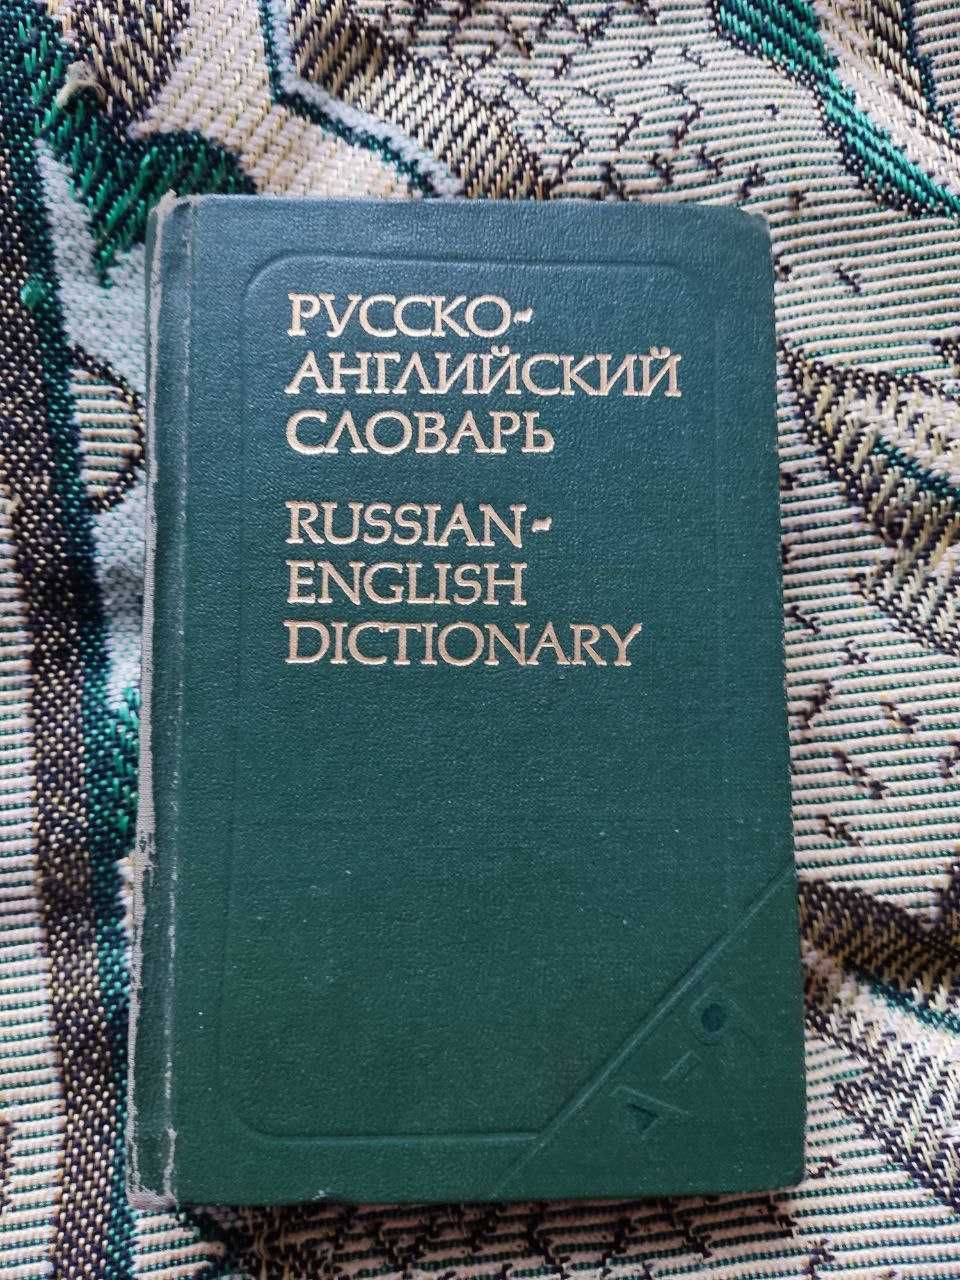 Ахманова О. - Русско-английский словарь